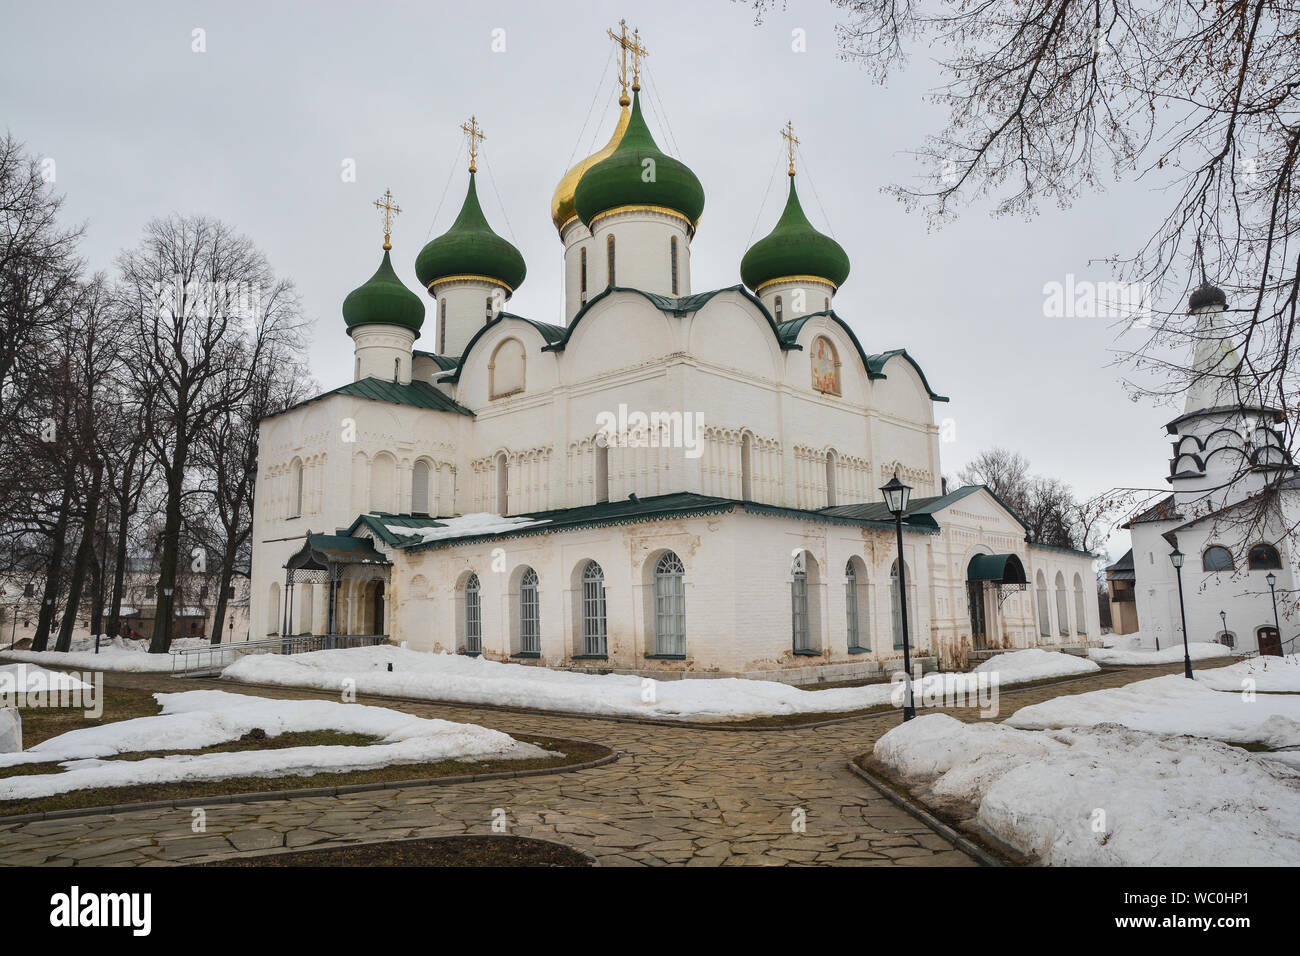 Cathédrale Spaso-preobrajensky de la Maison Spaso-evfimiev monastère. Dans l'Église orthodoxe de Russie Vladimir region. Banque D'Images